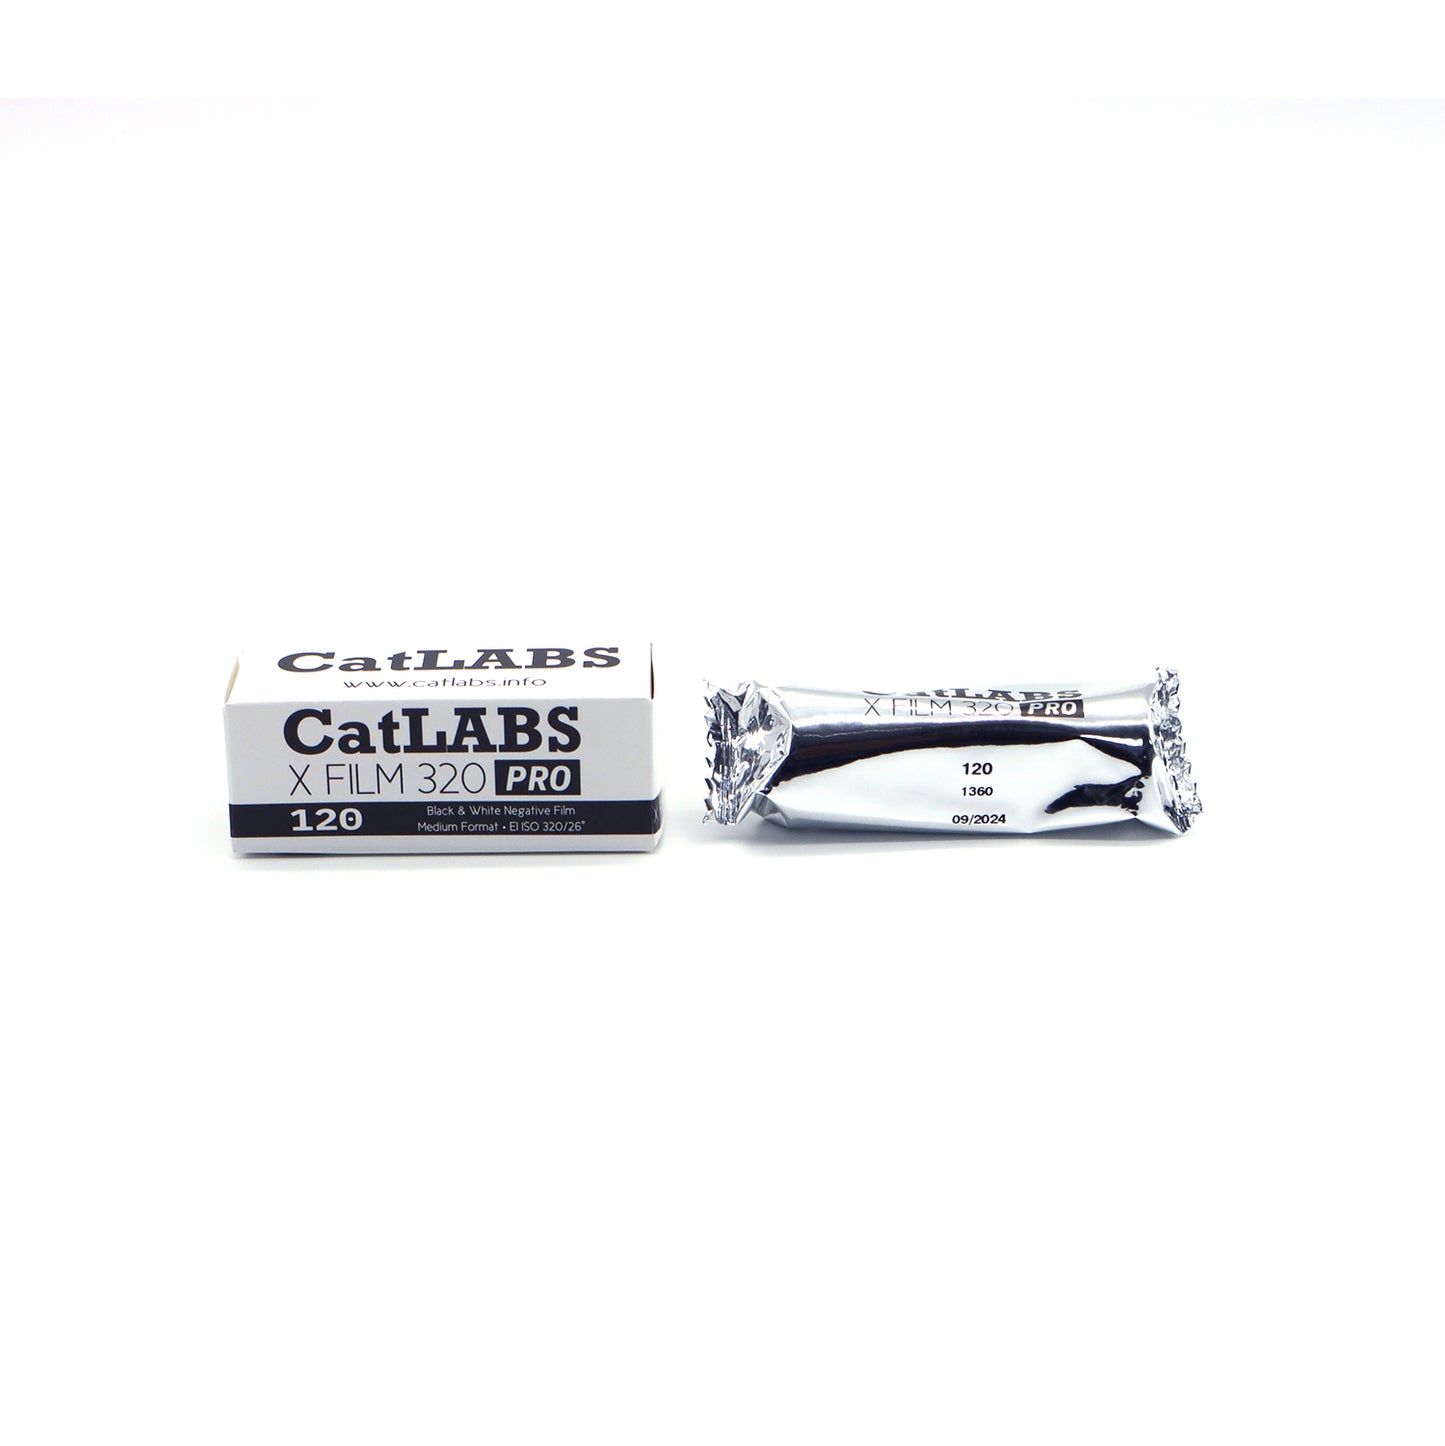 CatLABS X FILM 320 Pro B&W Negative 120 Film